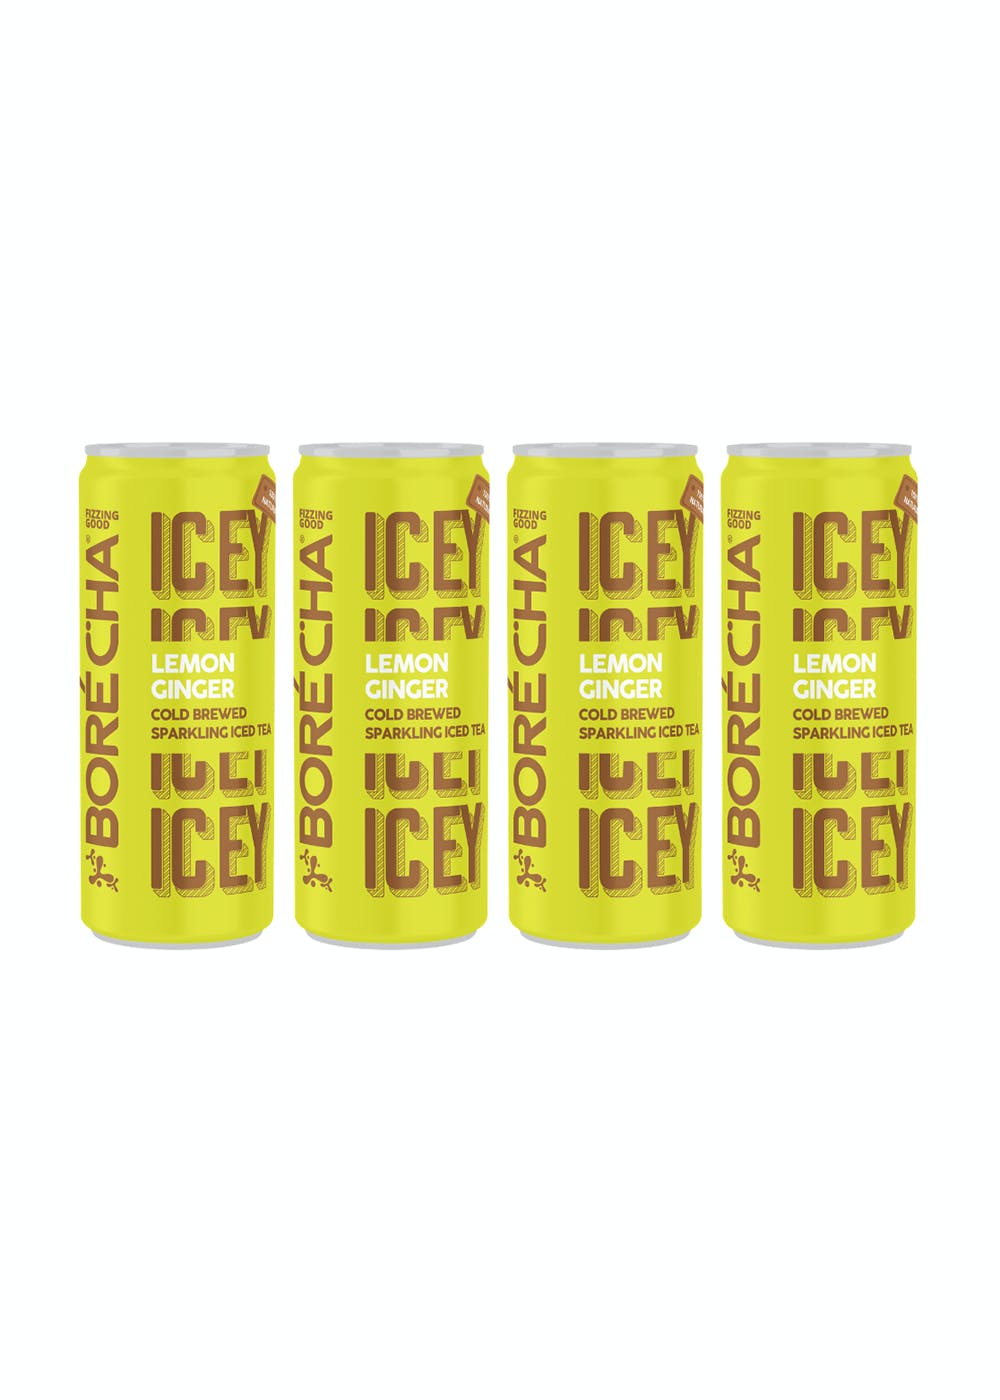 Icey Lemon Ginger Iced Tea - Pack of 4